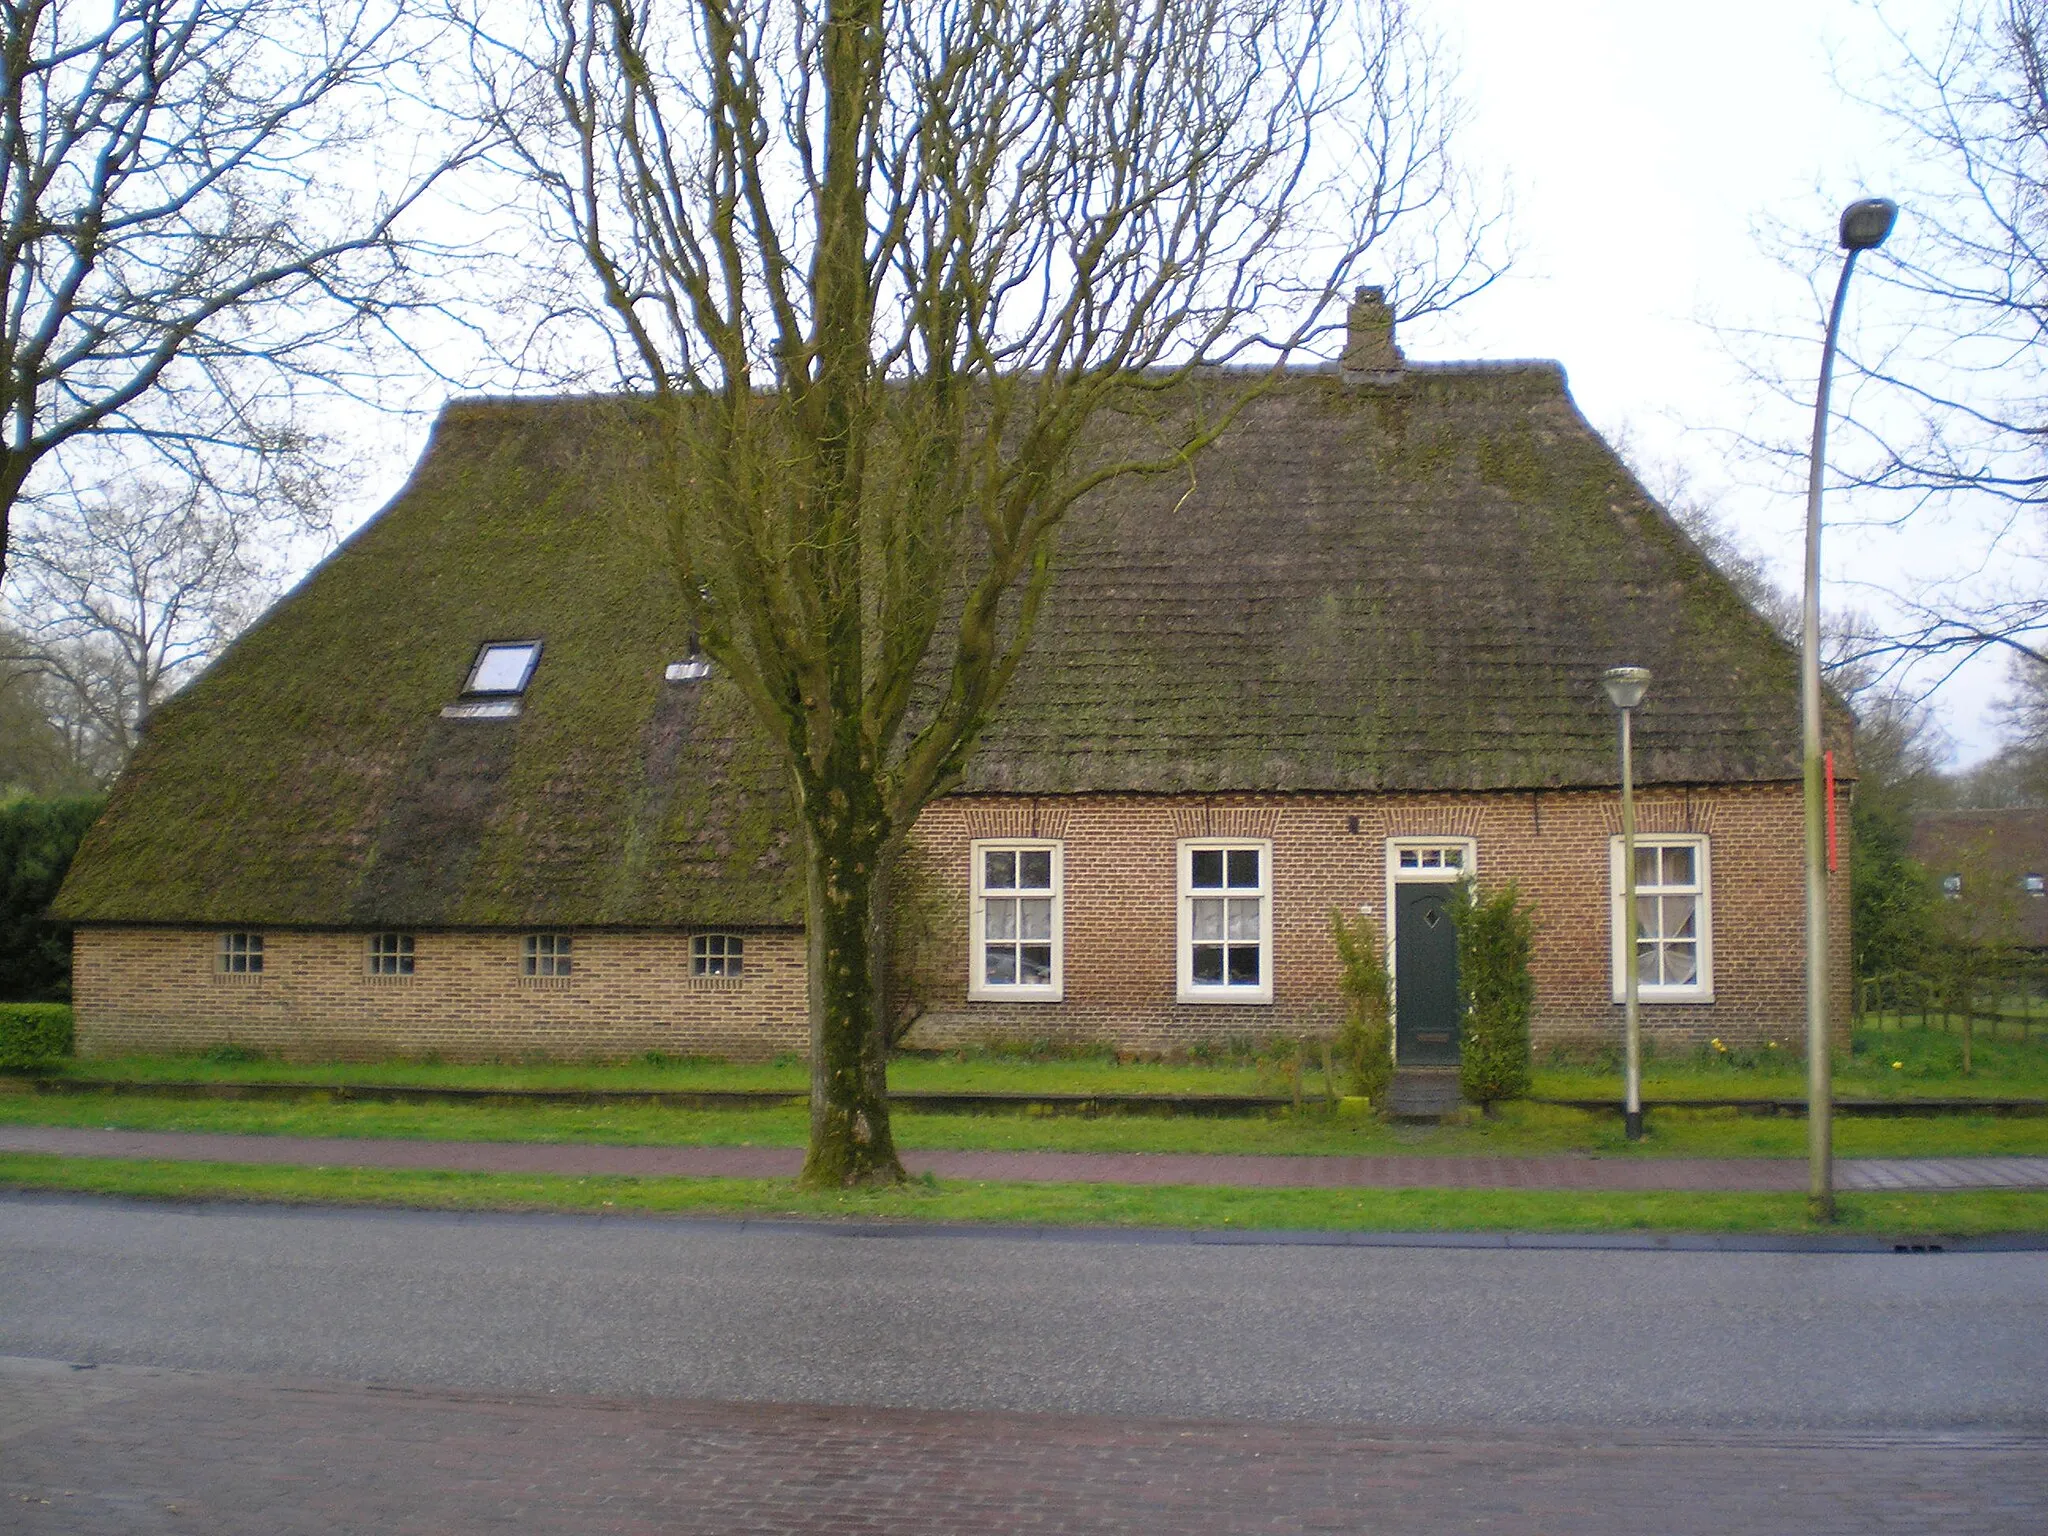 Photo showing: Aelderstraat 60, Aalden in Drenthe in the Netherlands